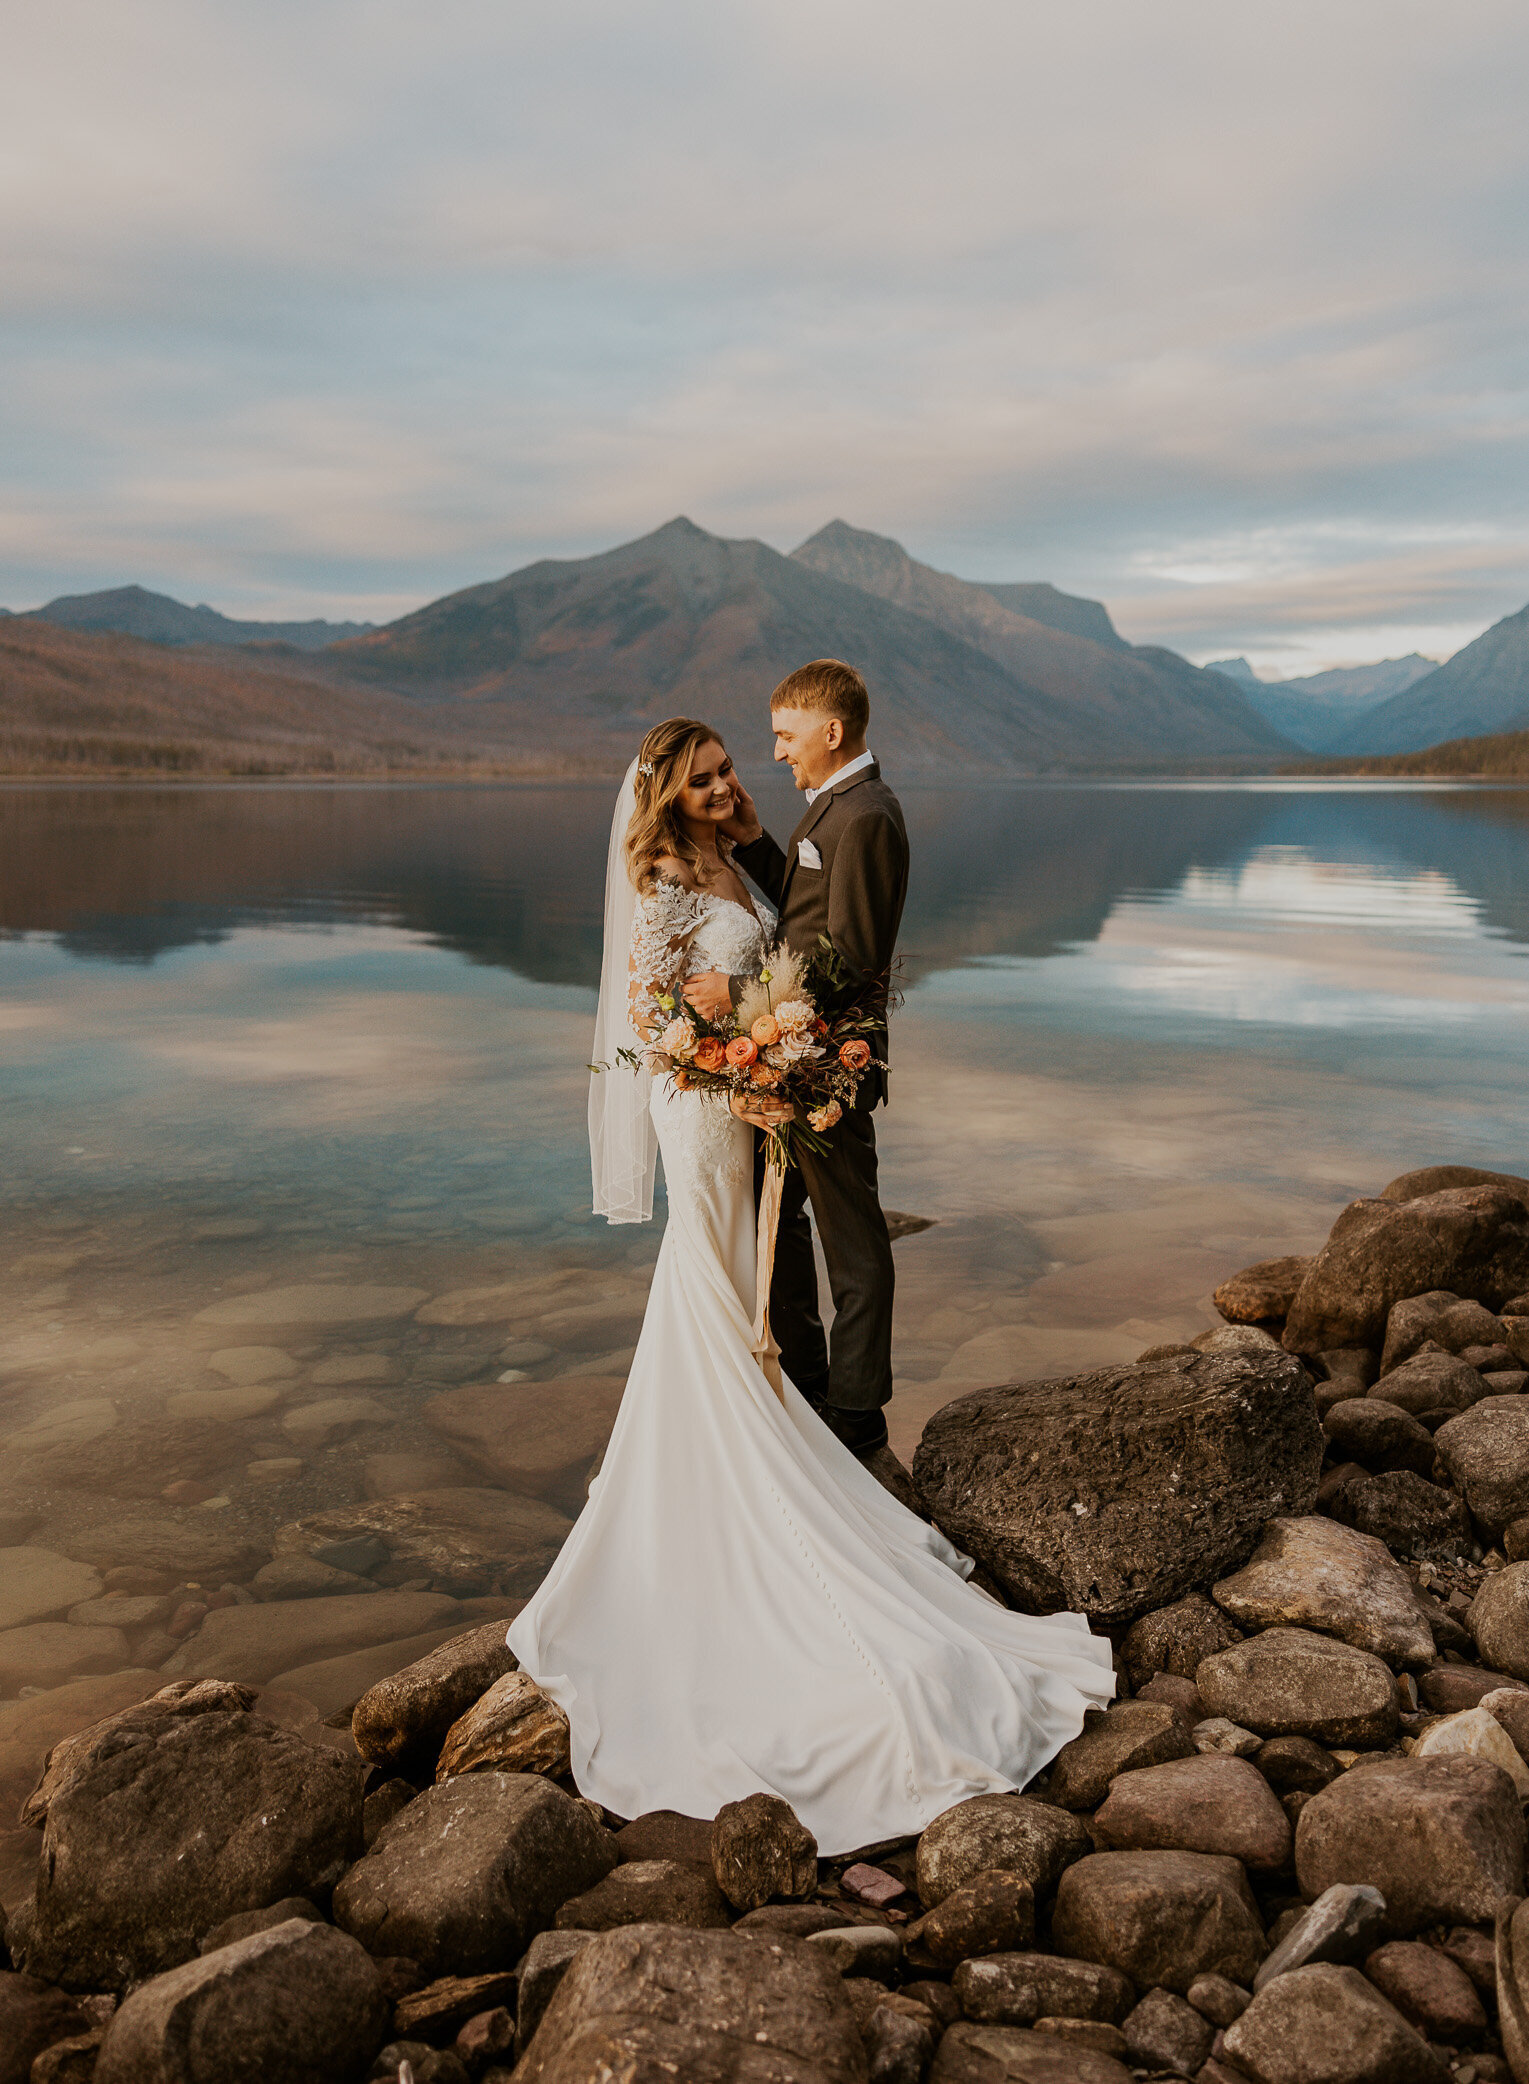 Adventure elopement photographer capturing elopement ceremonies in Glacier National Park